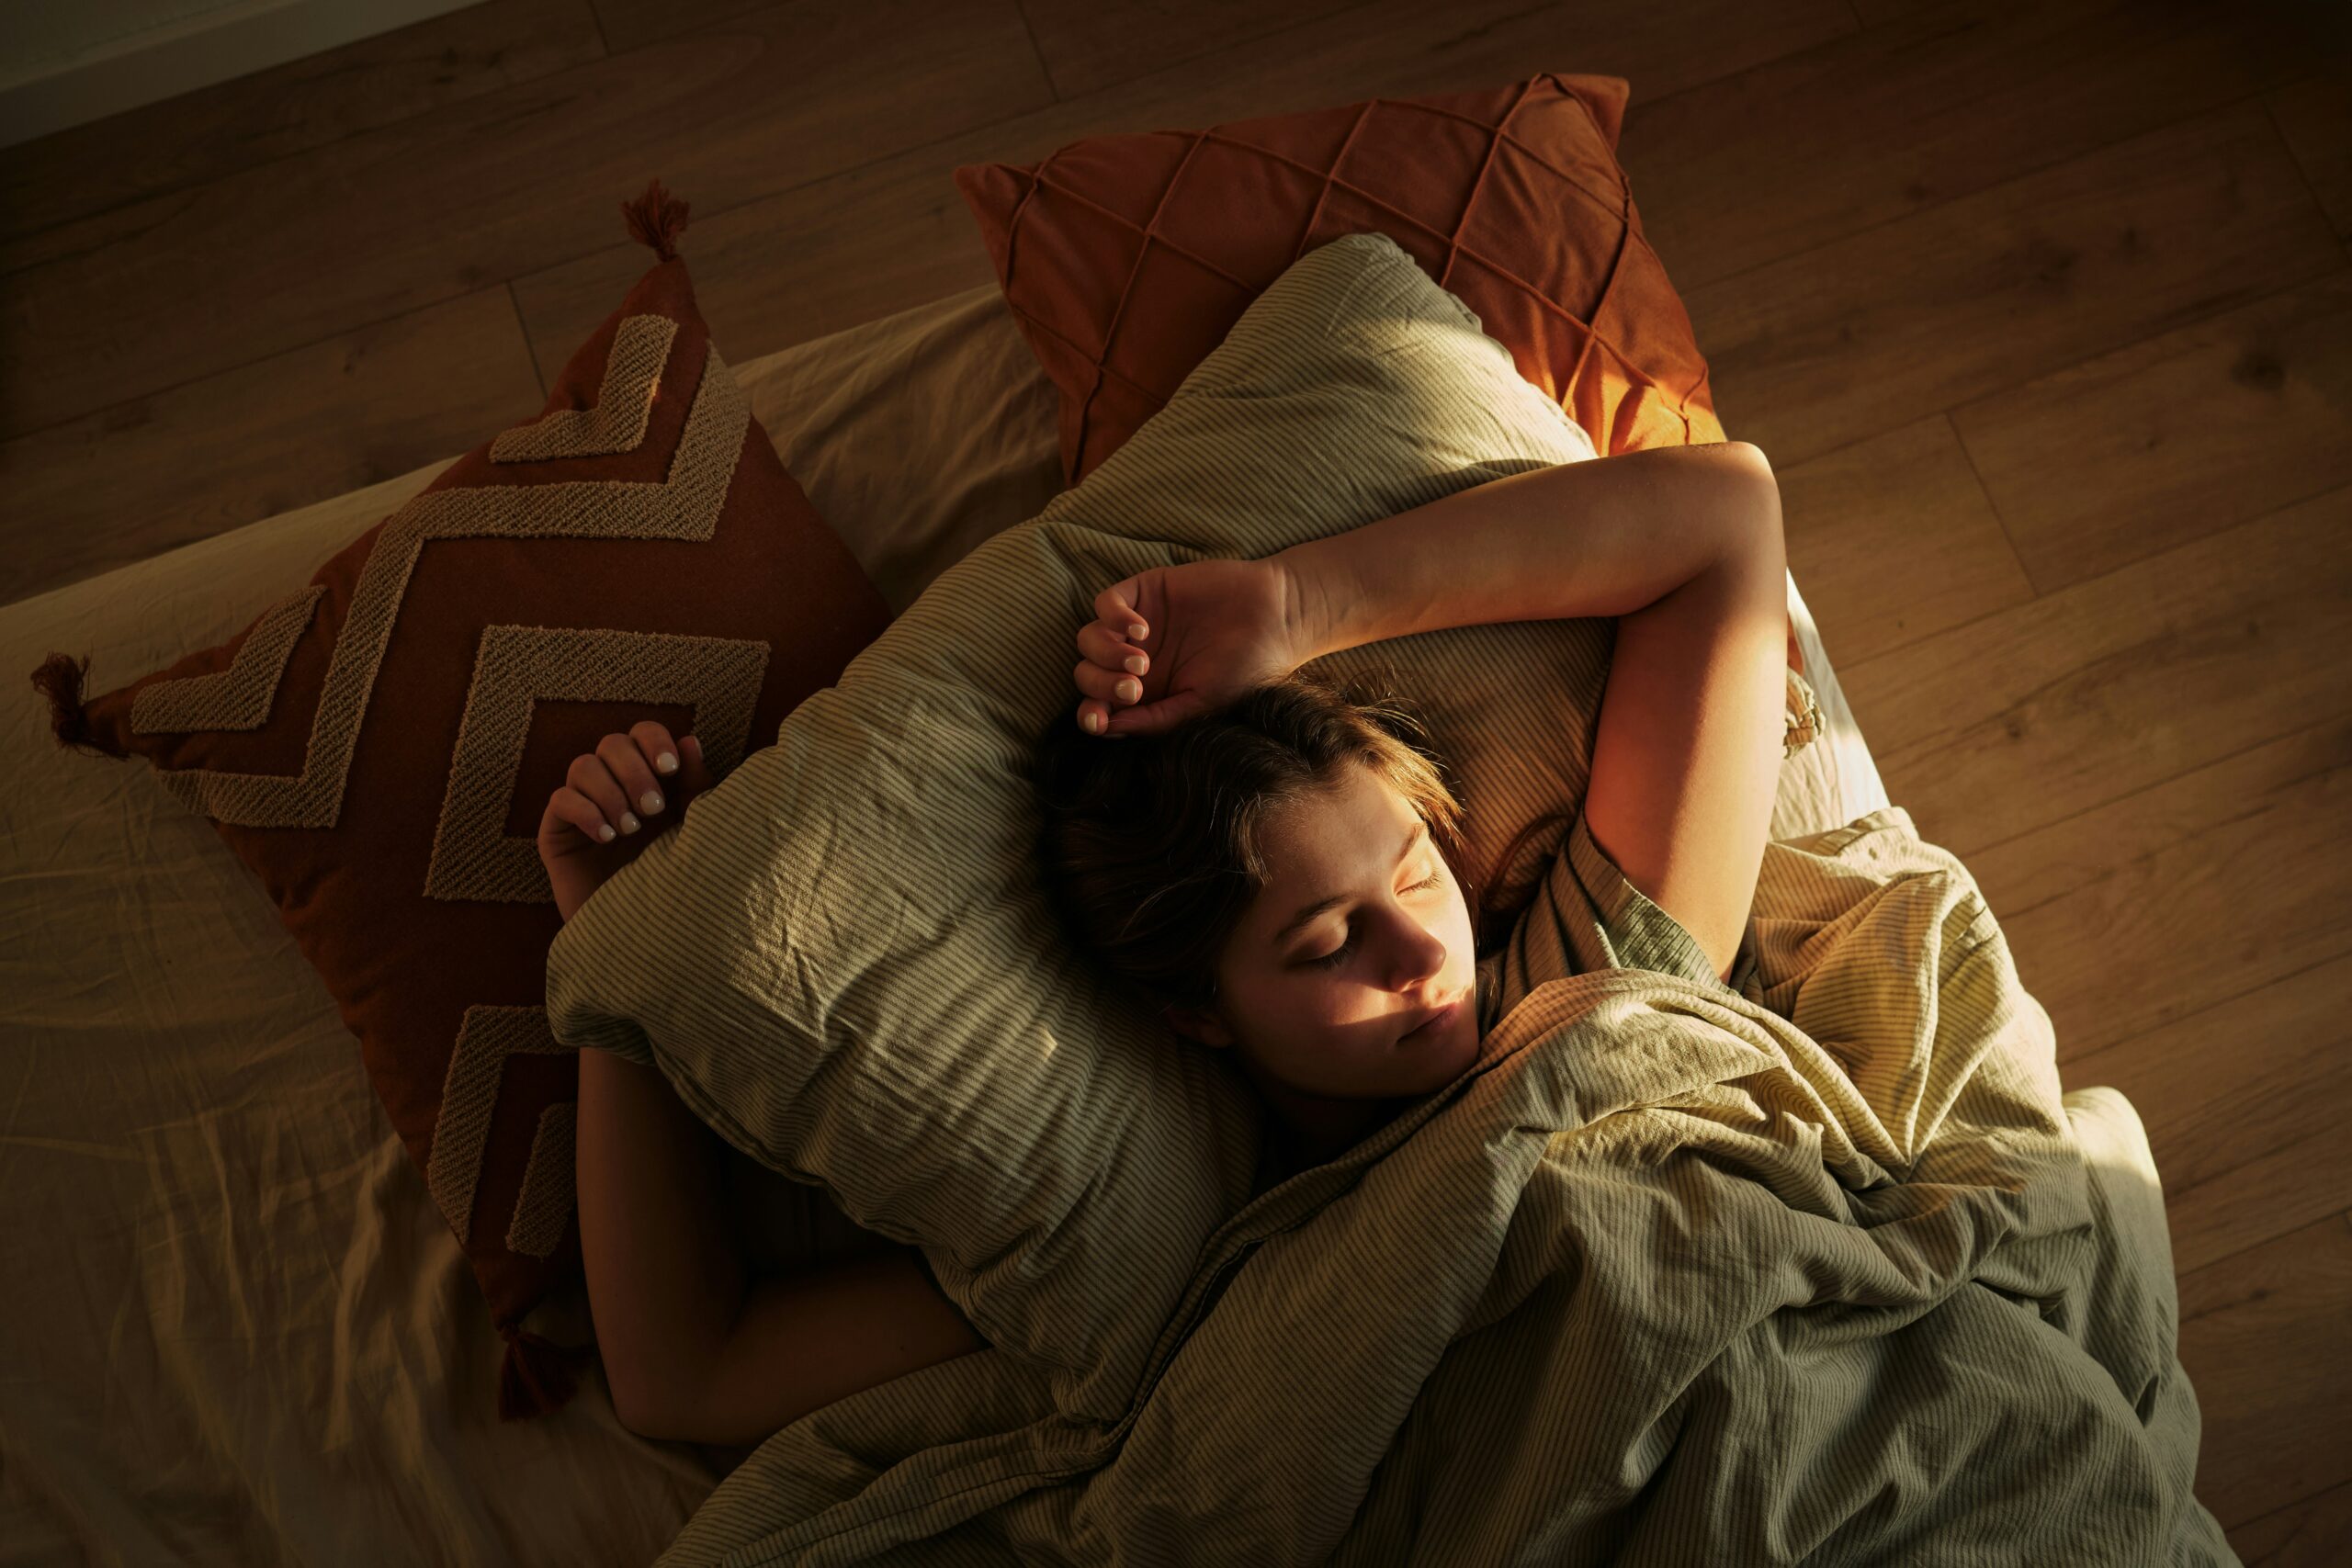 pessoa deitada na cama com os braços acima da cabeça, enquanto um fecho de luz reflete em seu rosto